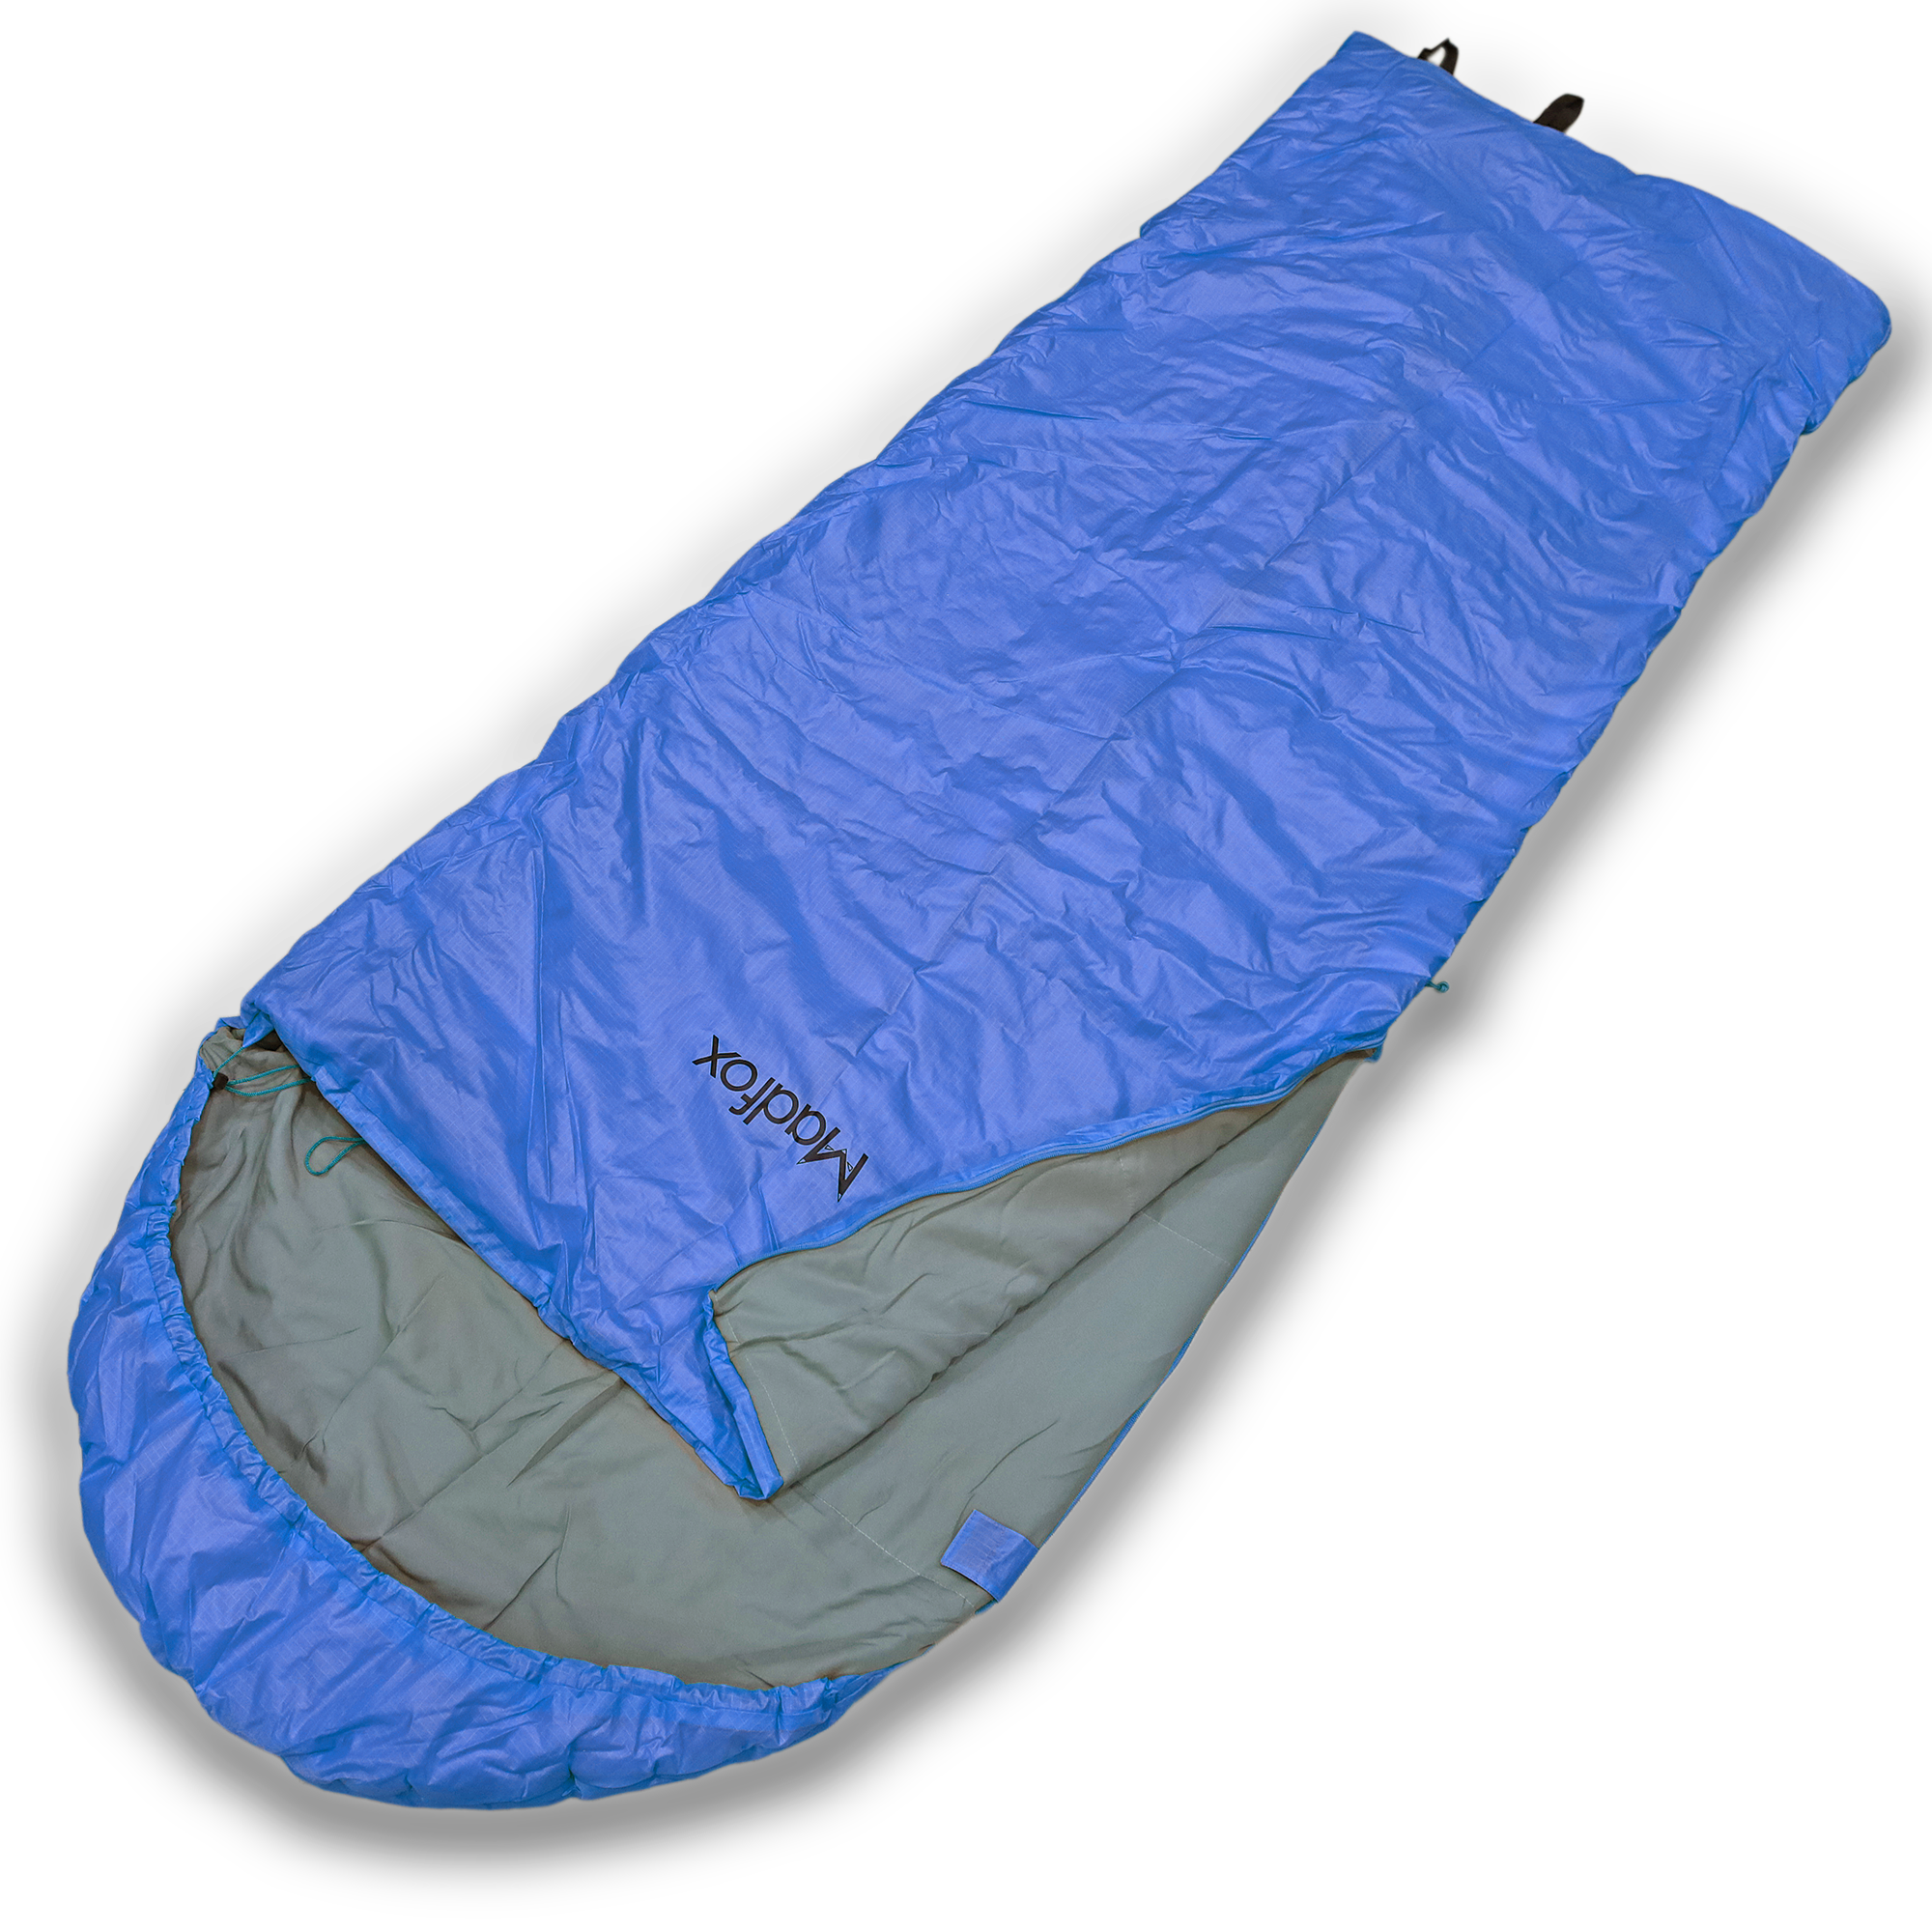  C140W waterproof hooded rectangular sleeping bag 